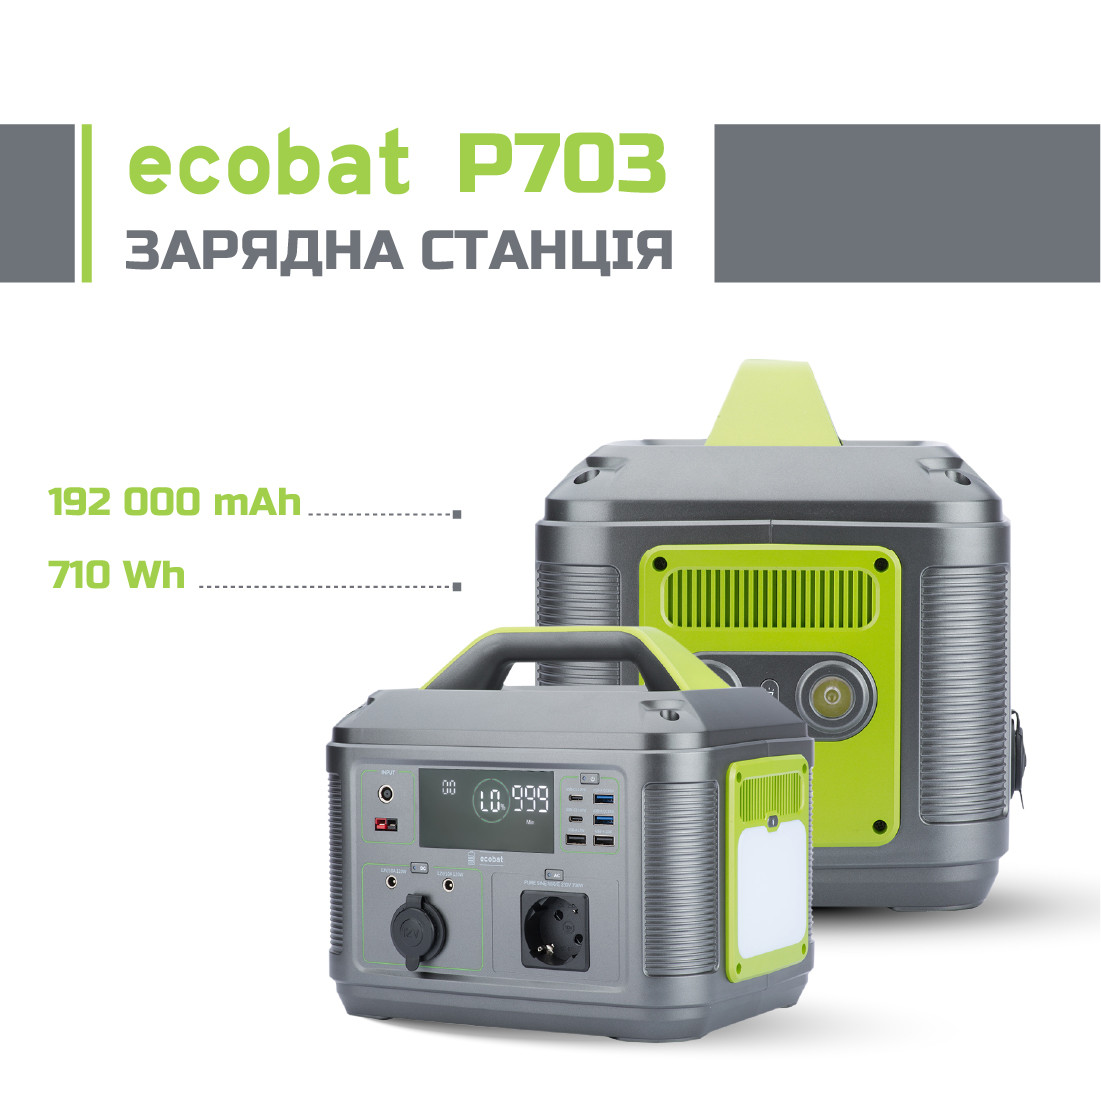 Уценка!Зарядна станція Ecobat P703 192000 мАг 700 Вт